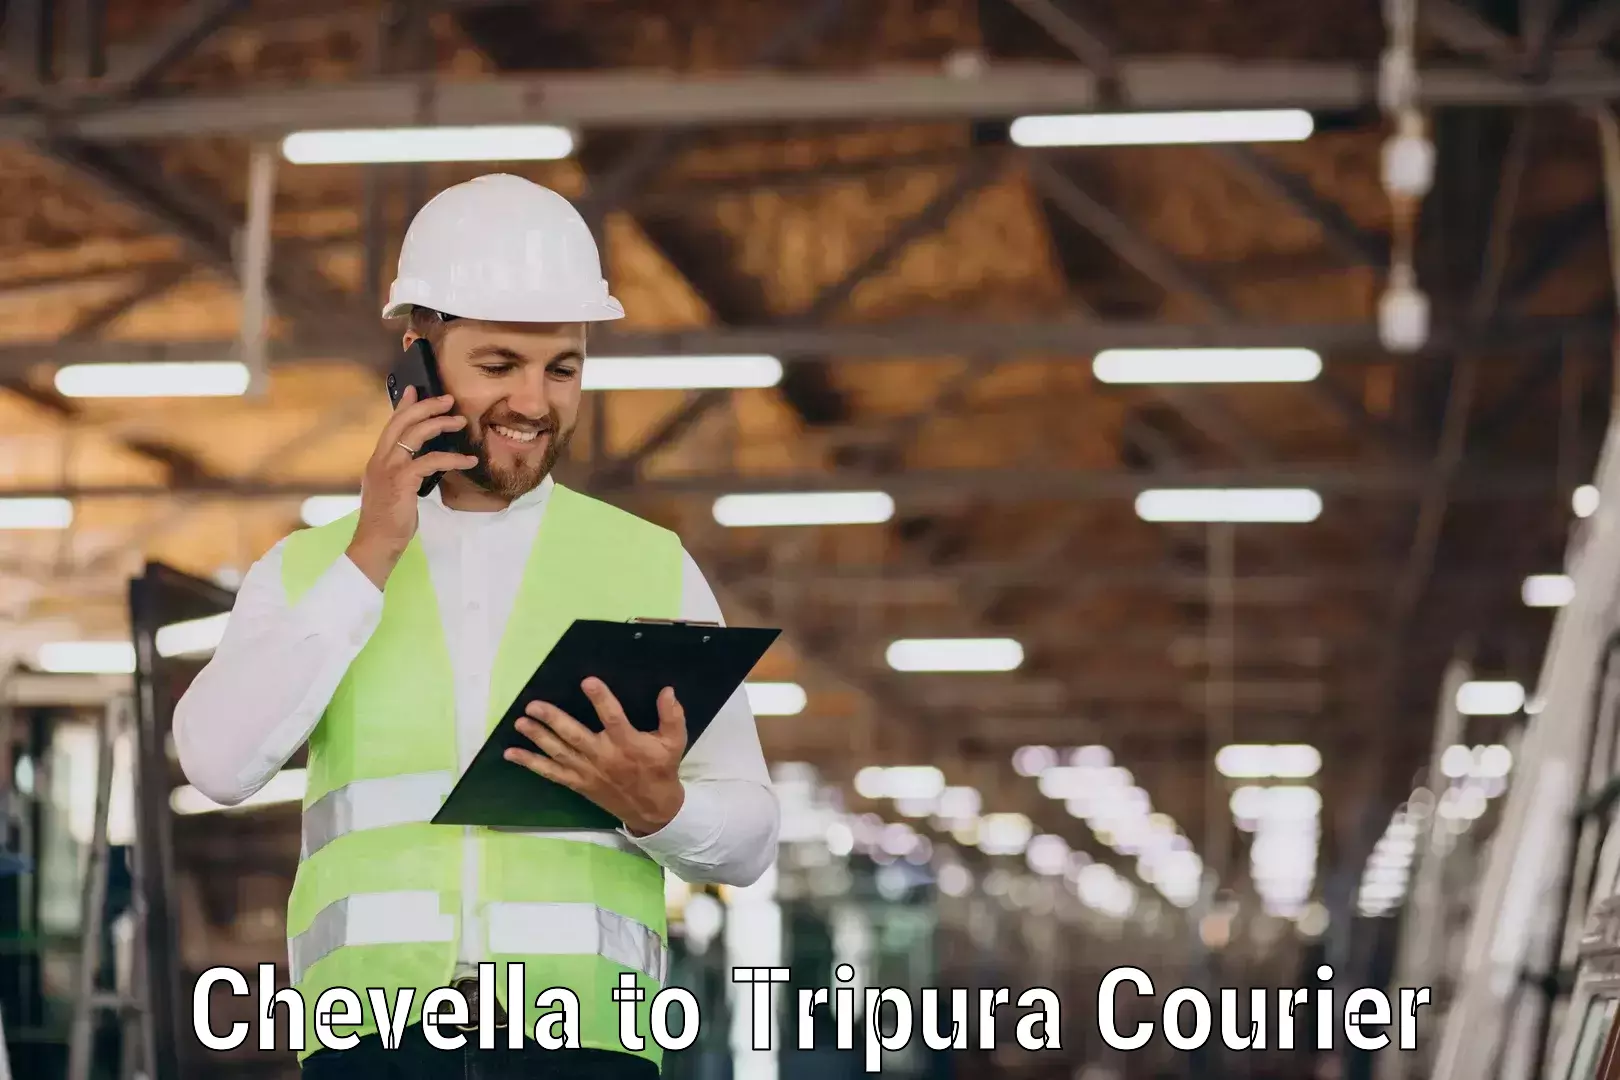 Efficient order fulfillment Chevella to Teliamura